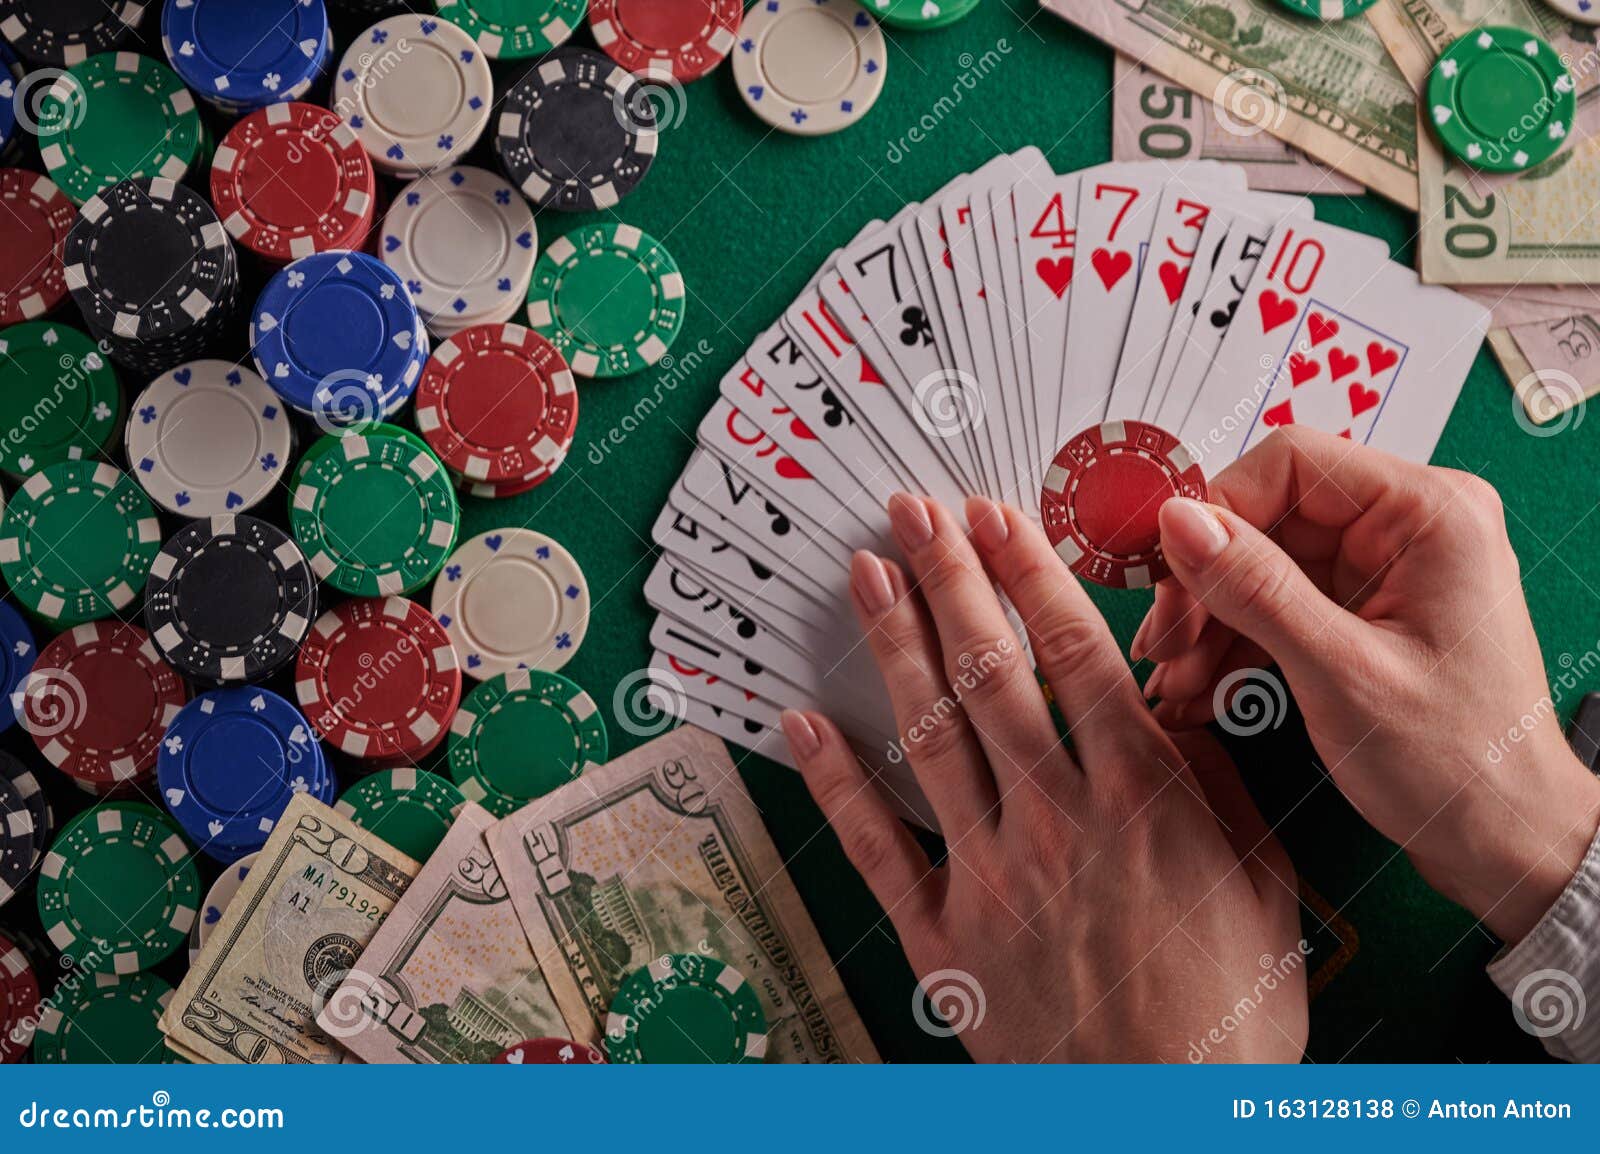 Играть в казино на доллары казино автоматы играть онлайн бесплатно без регистрации и смс